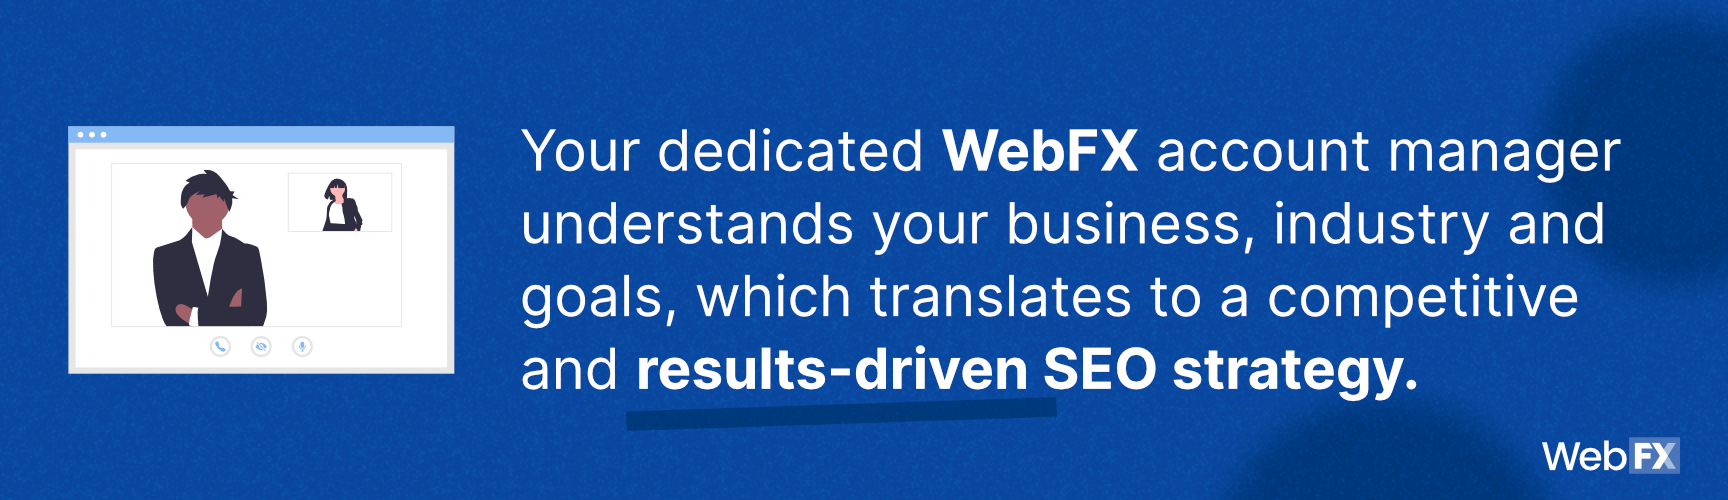 WebFX了解您的业务，行业和目标，这是一个原因，它是最好的SEO公司